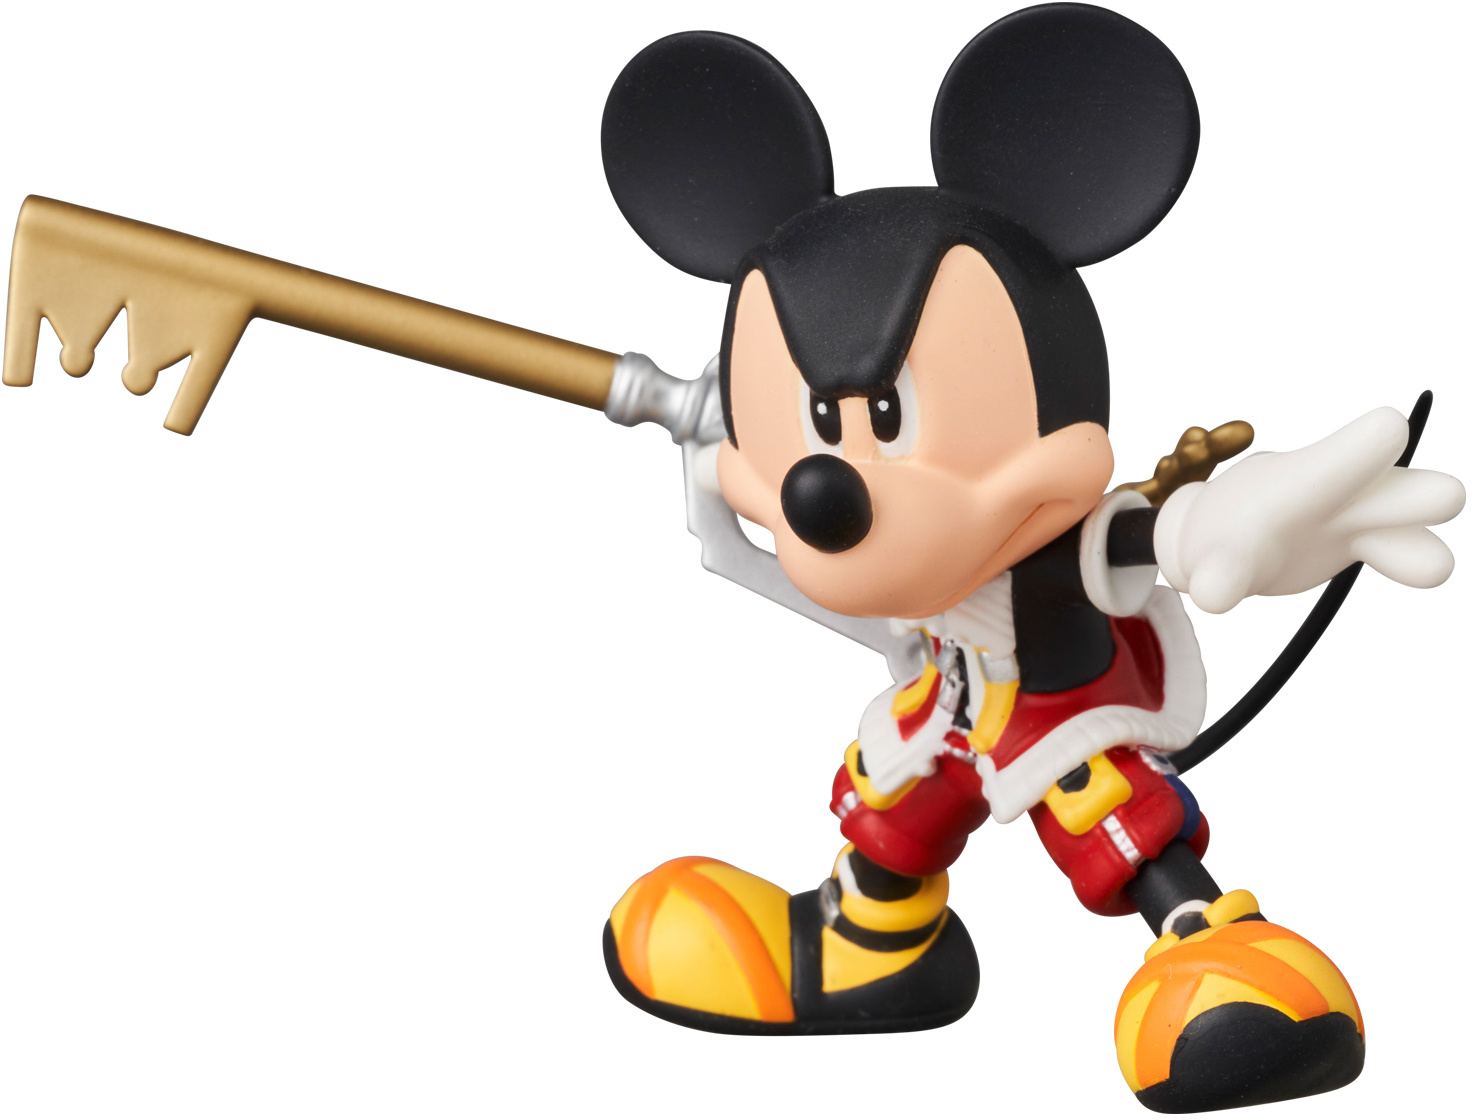 Ultra Detail Figure No. 786 Kingdom Hearts II: Mickey Mouse 